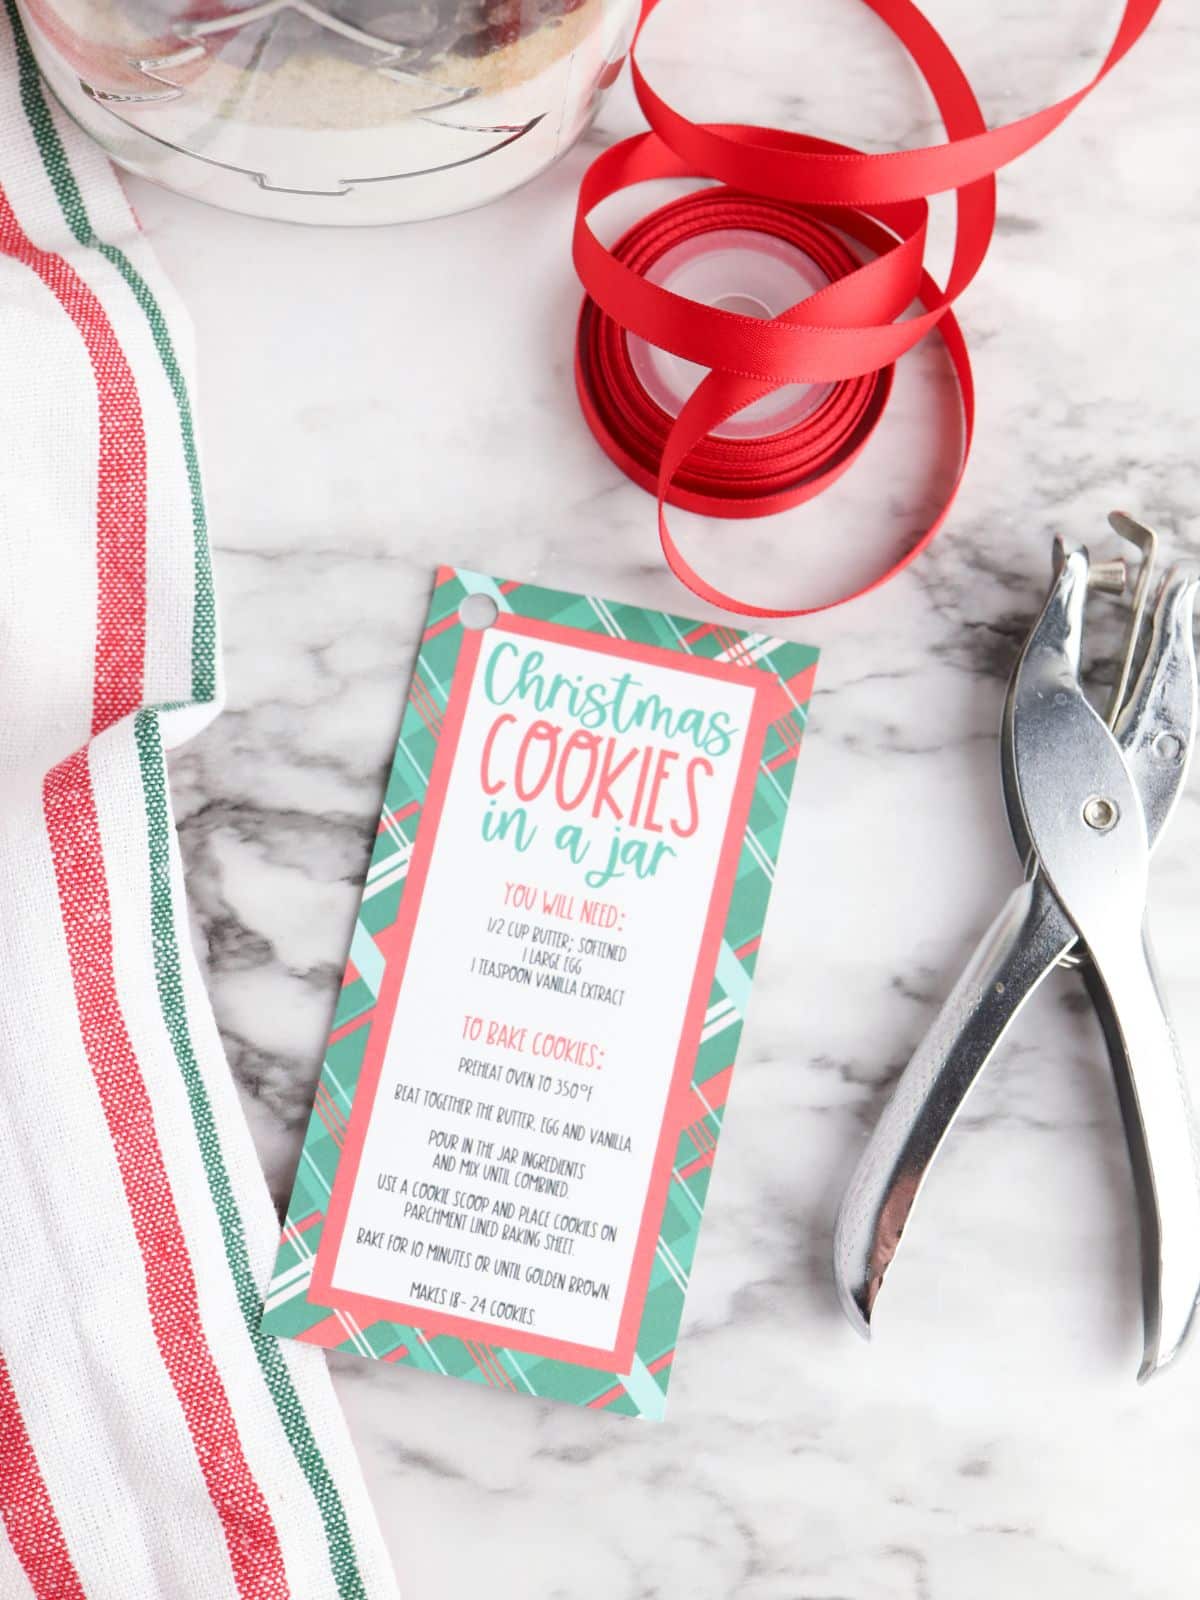 free printable gift tag for Christmas cookies.